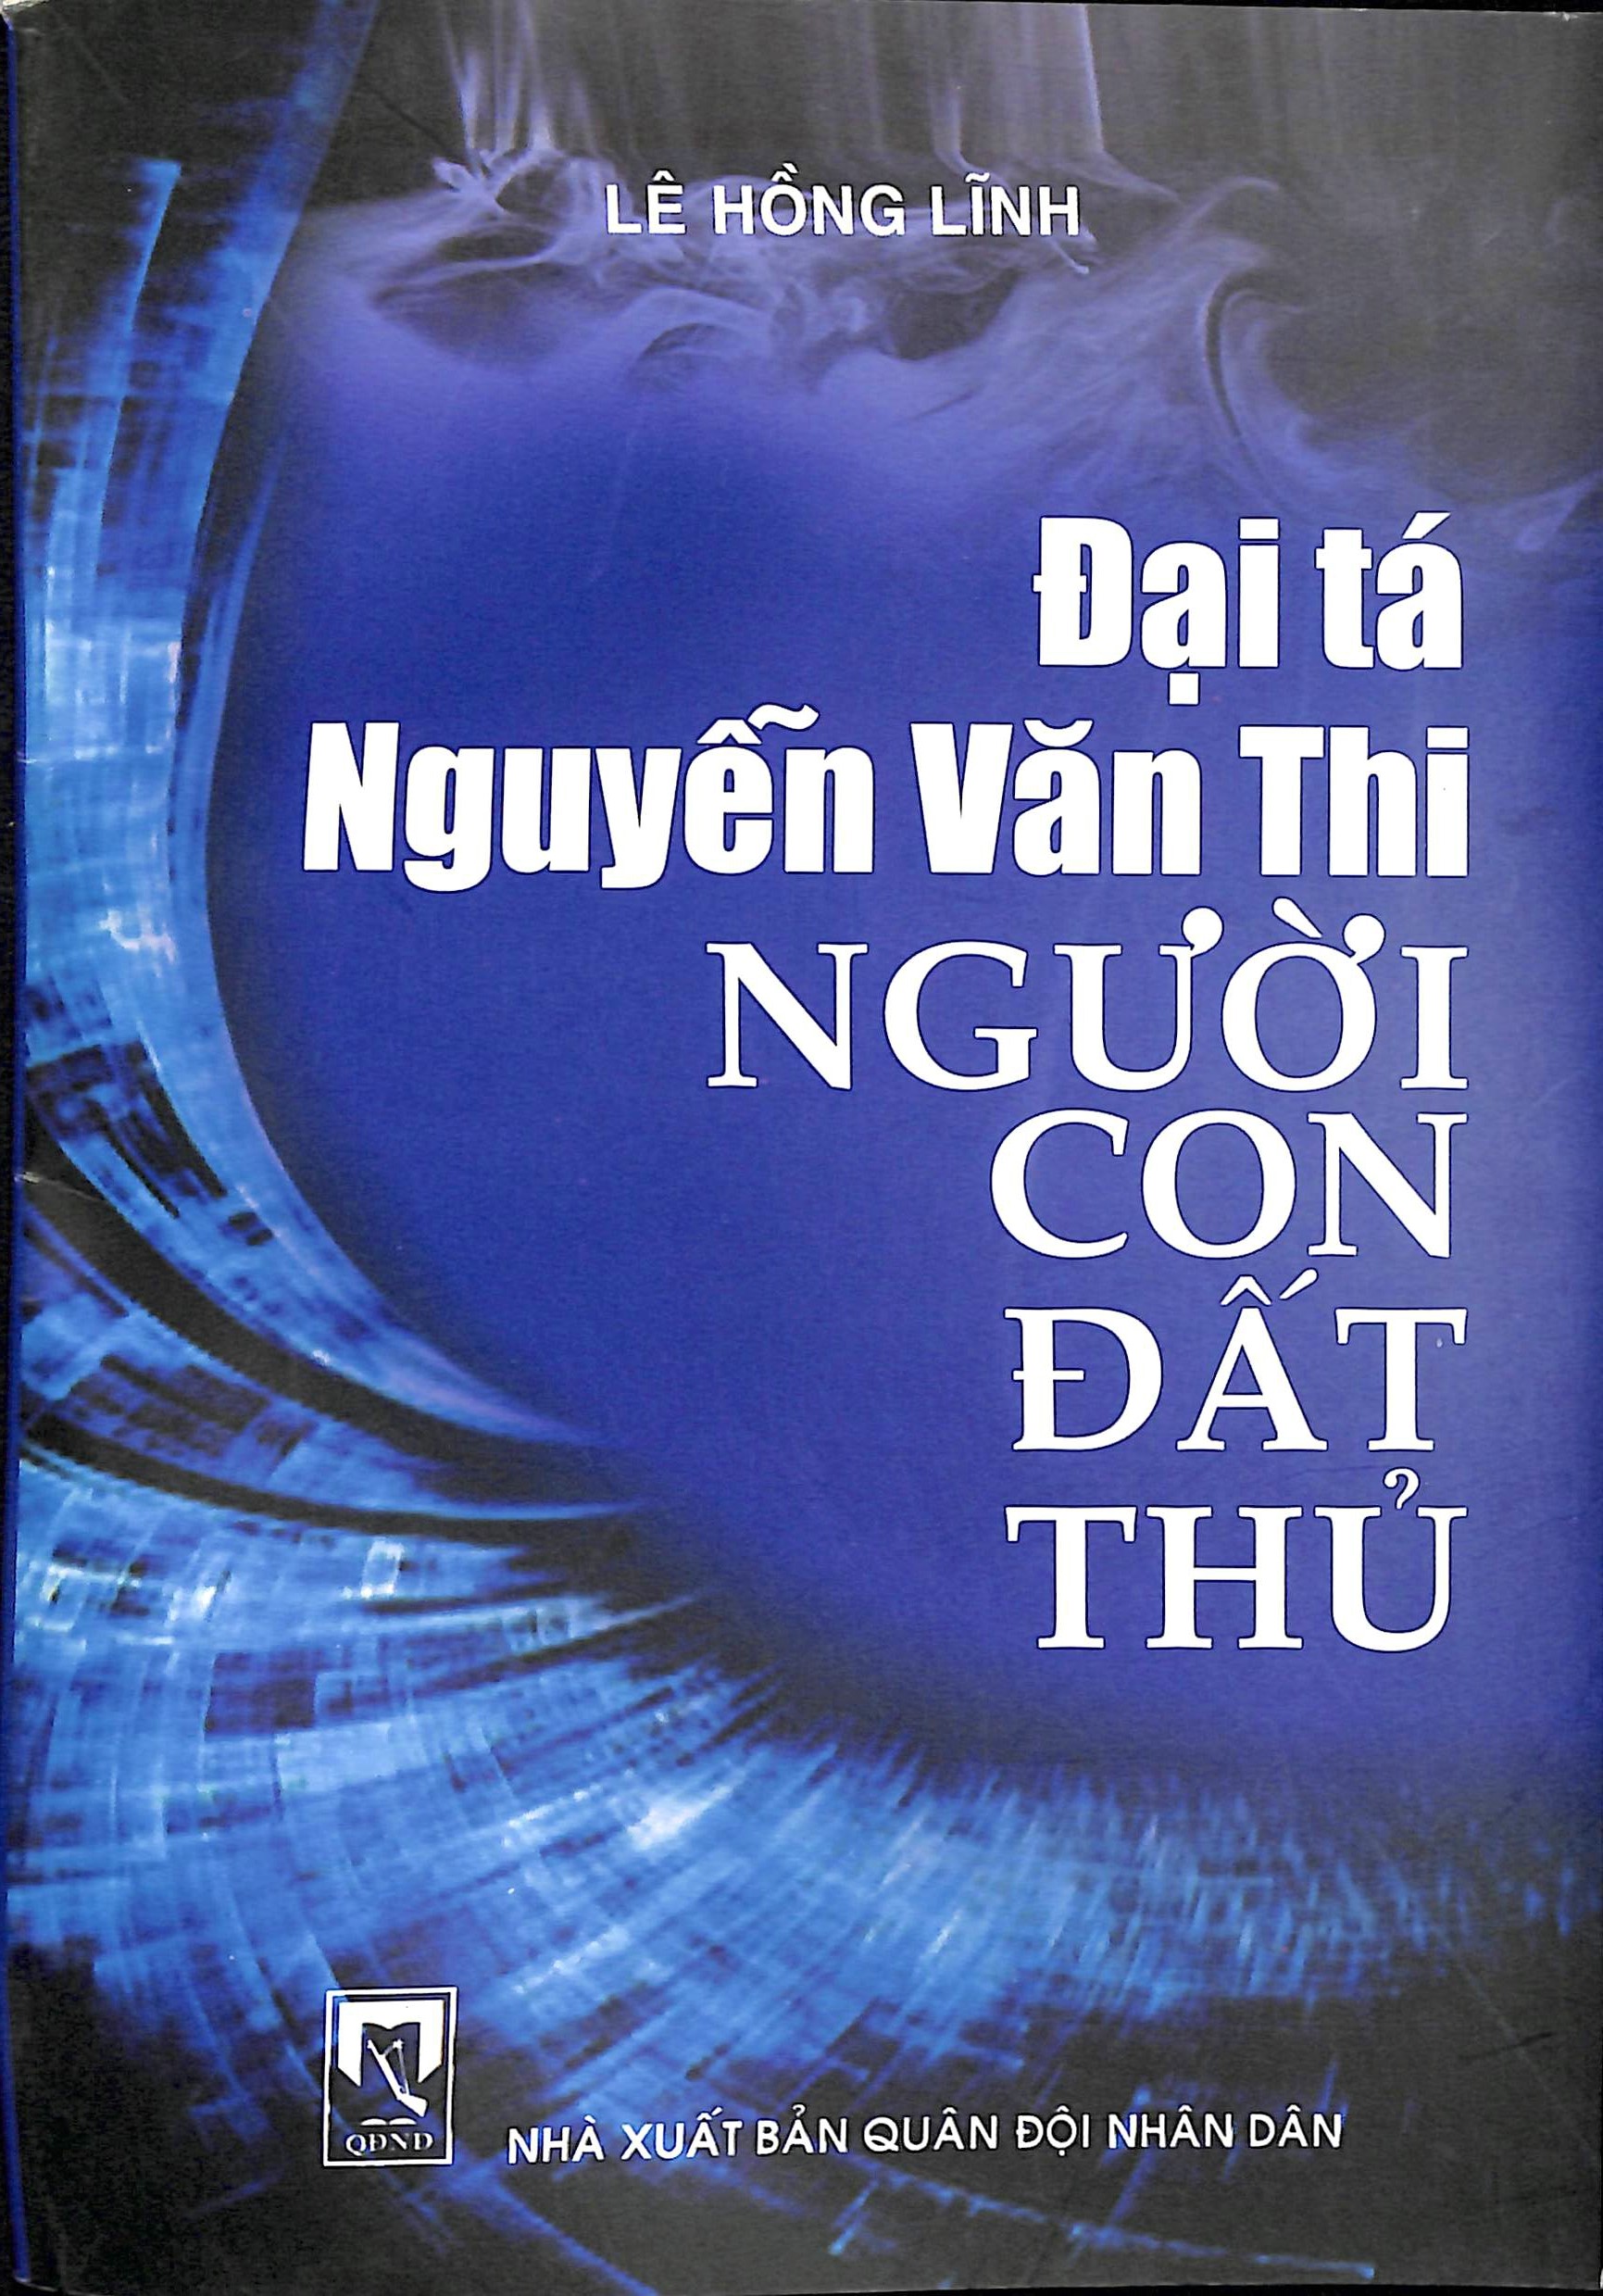 Đại tá Nguyễn Văn Thi - Người con đất Thủ